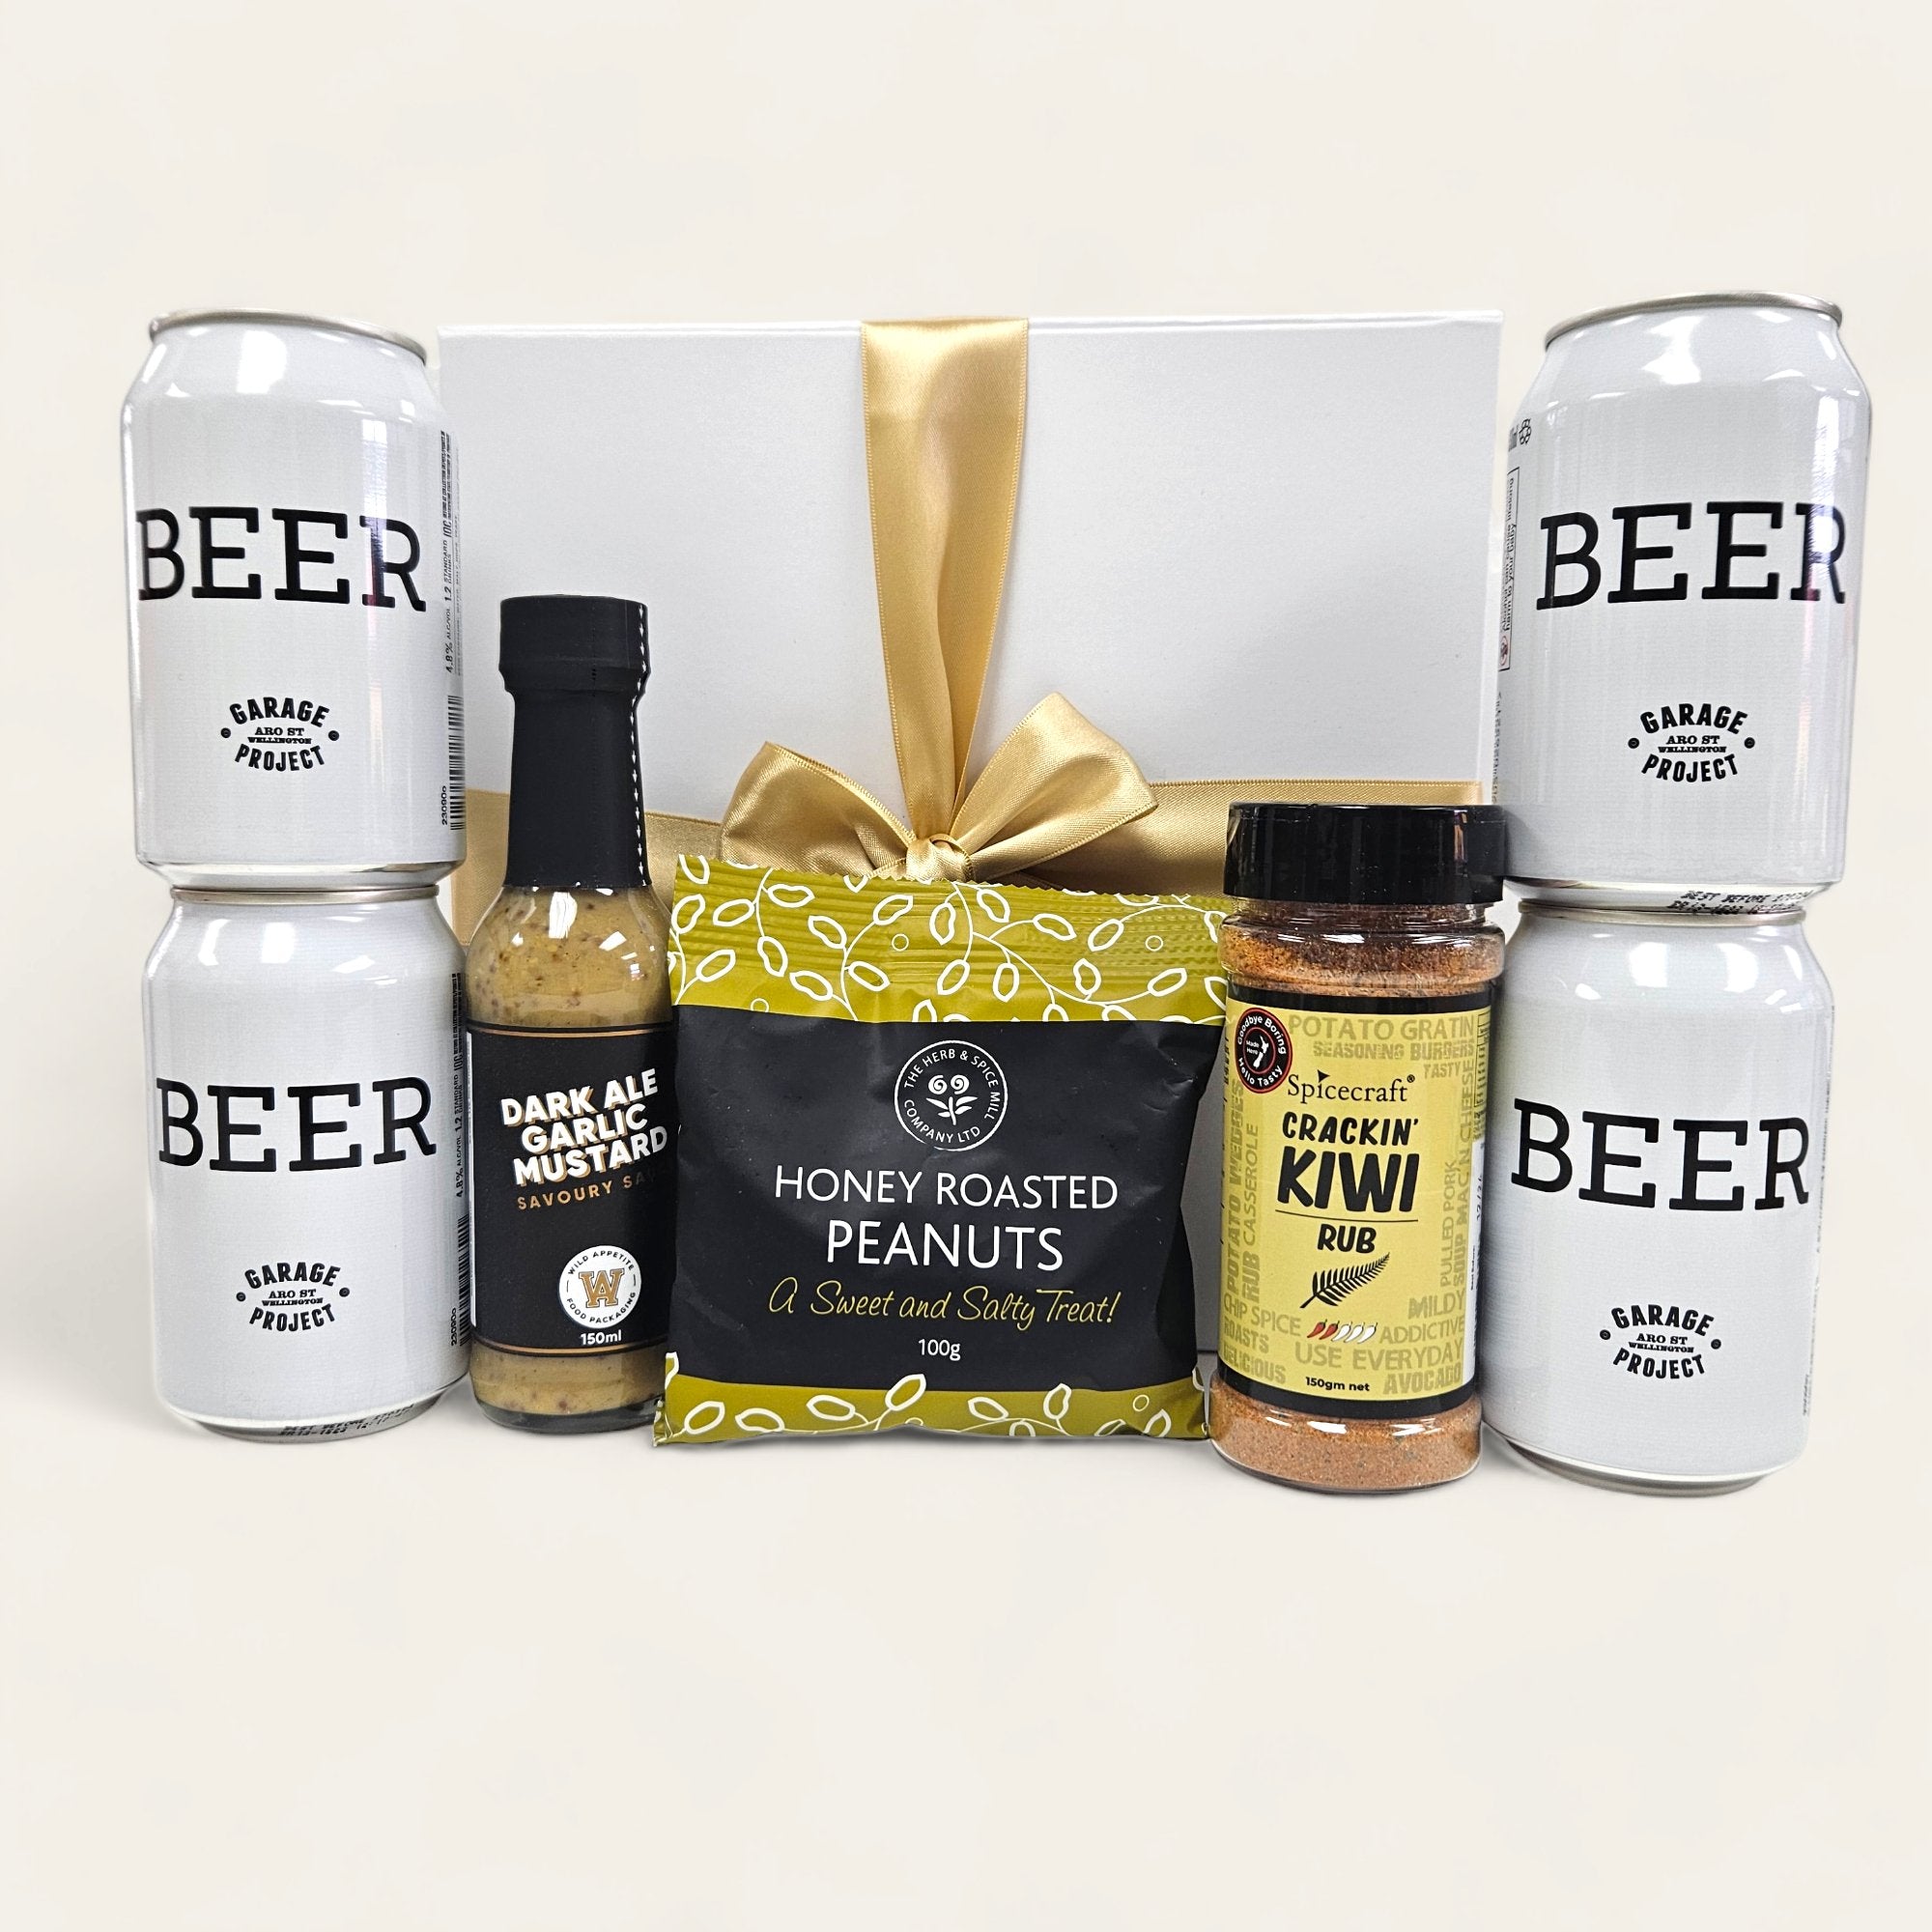 Beersies - Beautiful Gifts